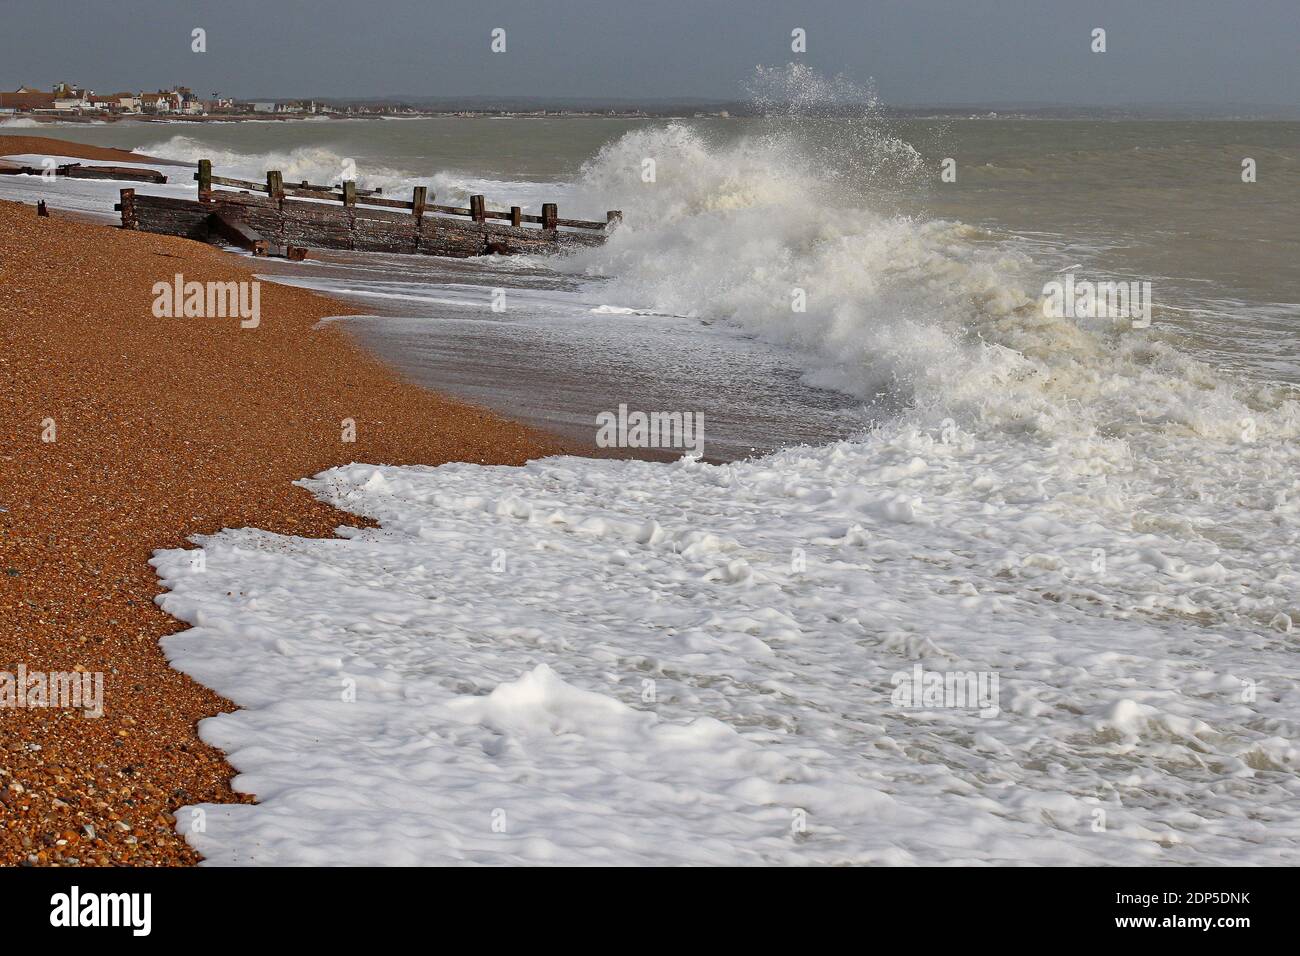 Vecchi groynes intemperie che proteggono la spiaggia di Pevensey Bay sulla costa meridionale dell'Inghilterra. Senza groynes la spiaggia soffrirebbe di erosione. Foto Stock